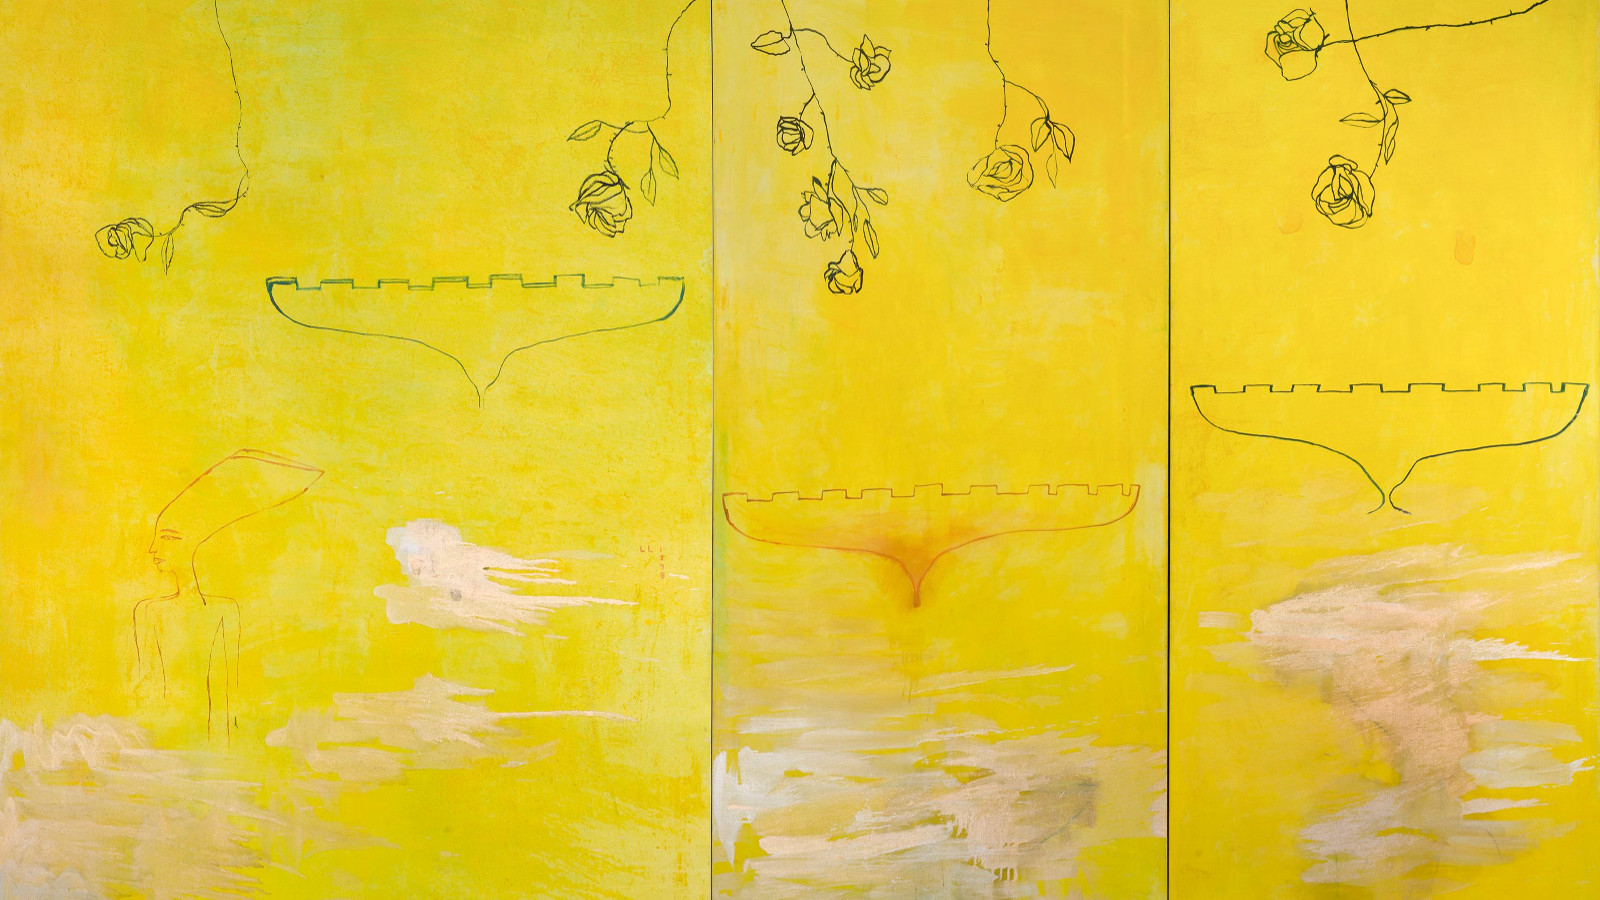 Kuvassa on keltaisella pohjalla kolmeen osaa hennoilla viivoilla rajattu teos.  Jokaisessa on alaspäin menevä kotka-figuuri. Yläosassa hentoja lehtipuiden oksia.